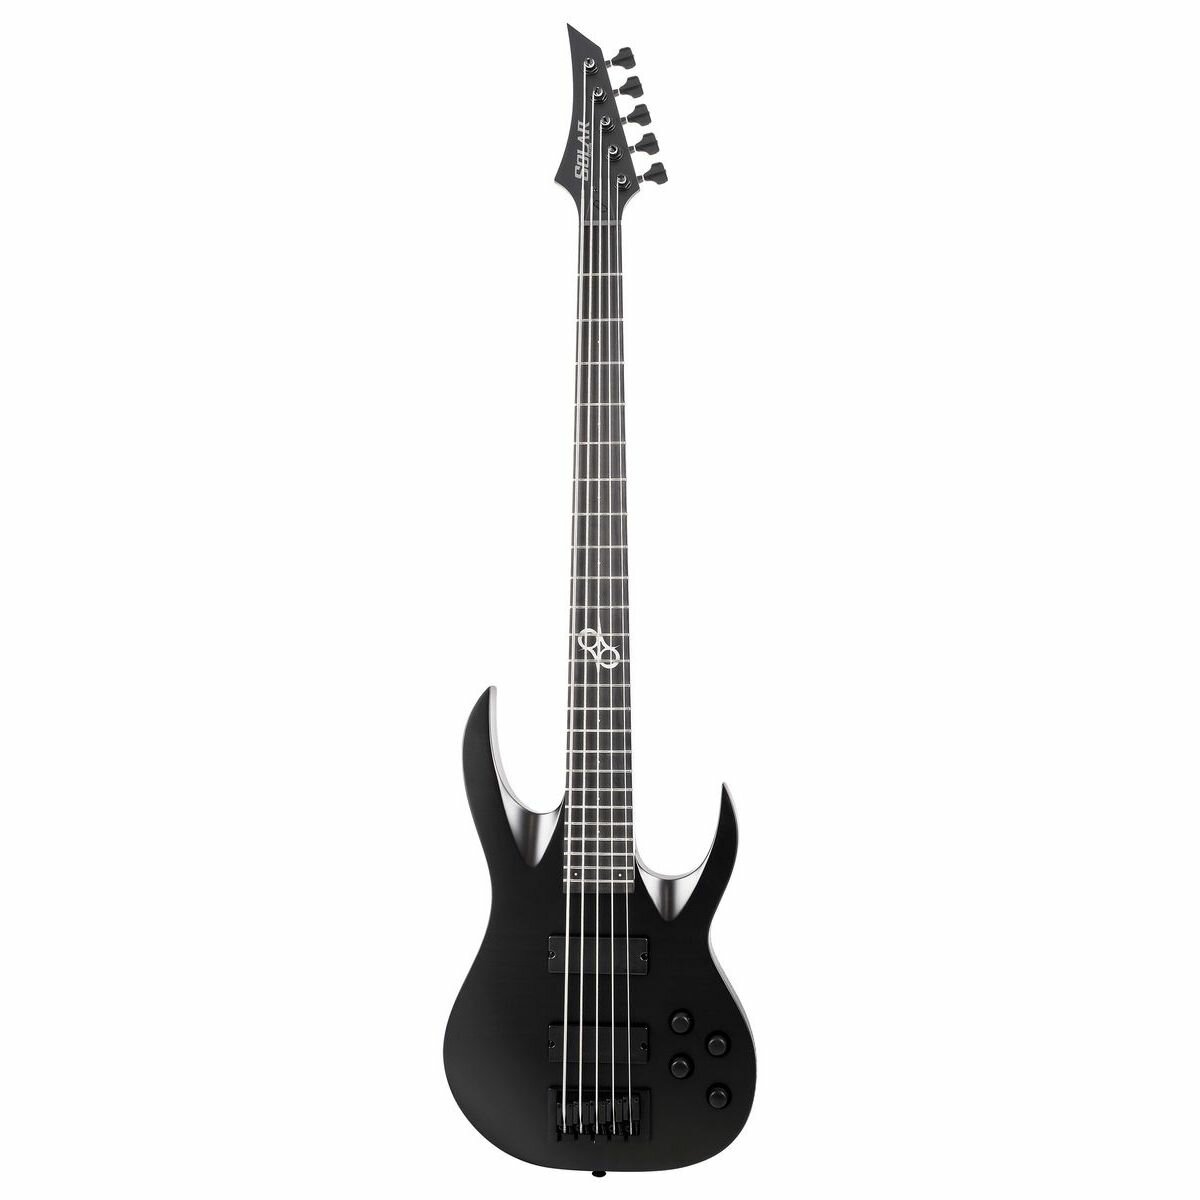 Solar Guitars AB2.5C 5-струнная бас-гитара HH активная электроника цвет черный матовый